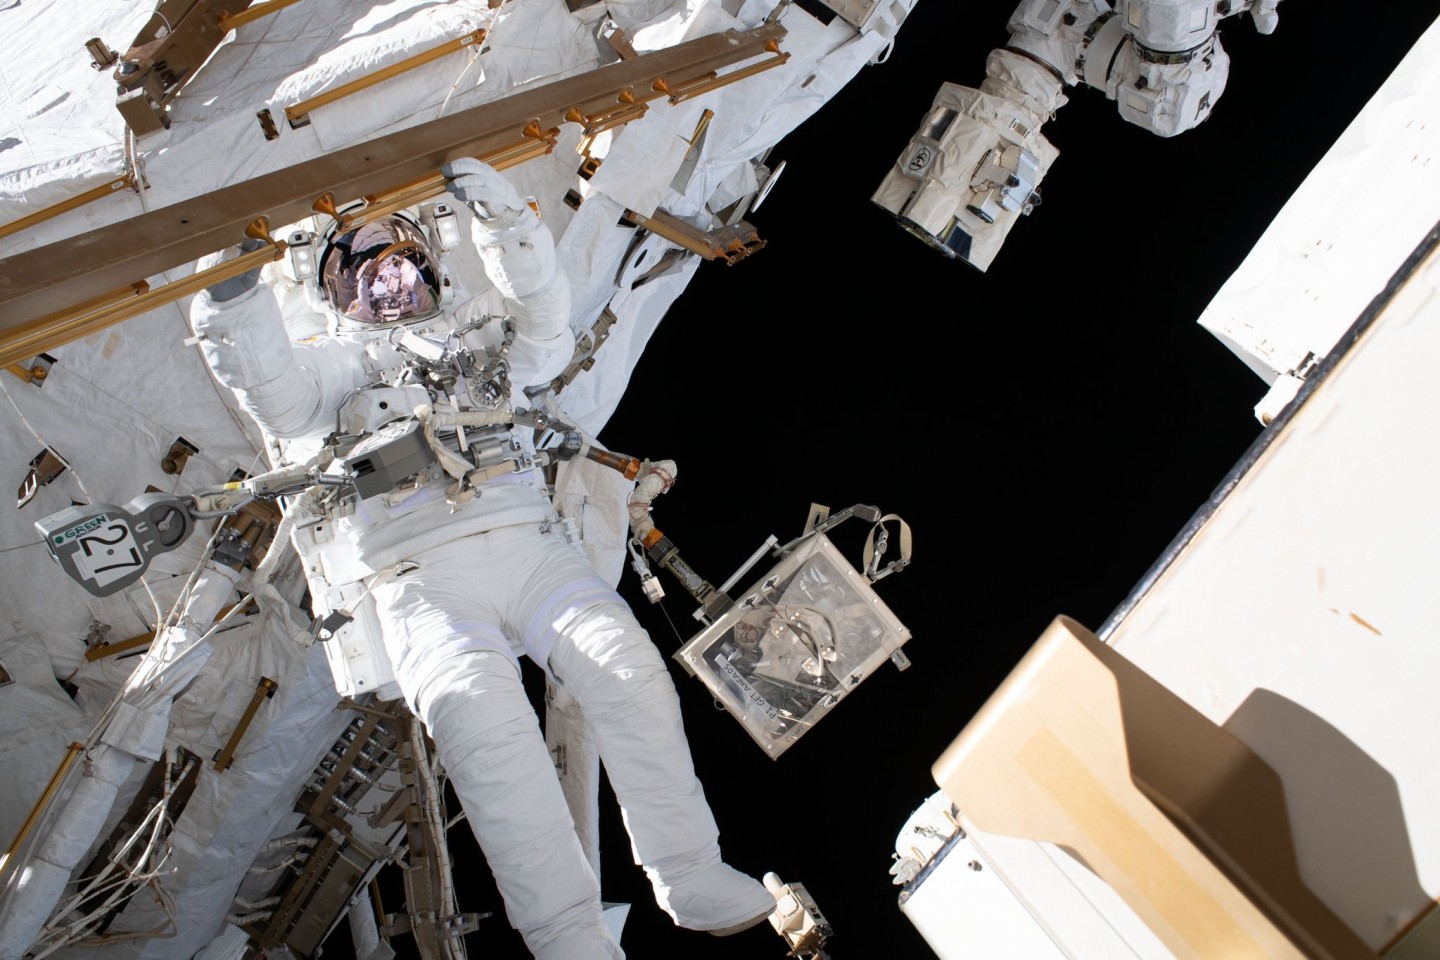 Der ESA-Astronaut Luca Parmitano ist an der Internationalen Raumstation angebunden, während er während eines Weltraumspaziergangs, der 6 Stunden und 16 Minuten dauerte, thermische Reparatu...